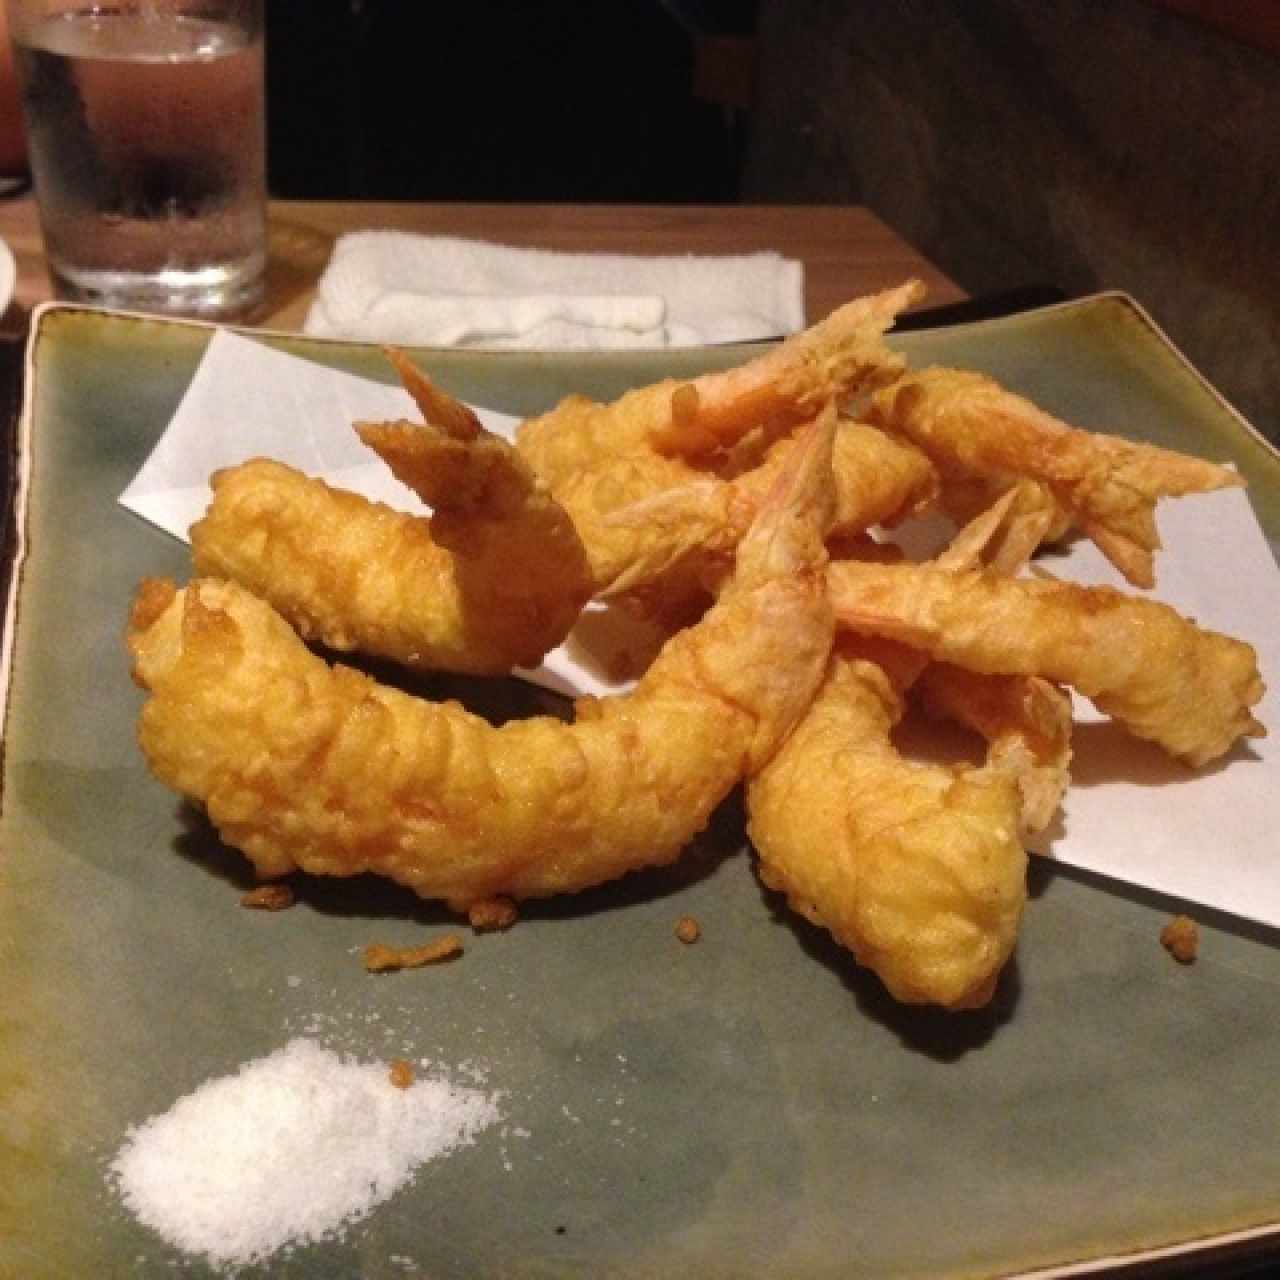 Ebi no tempura